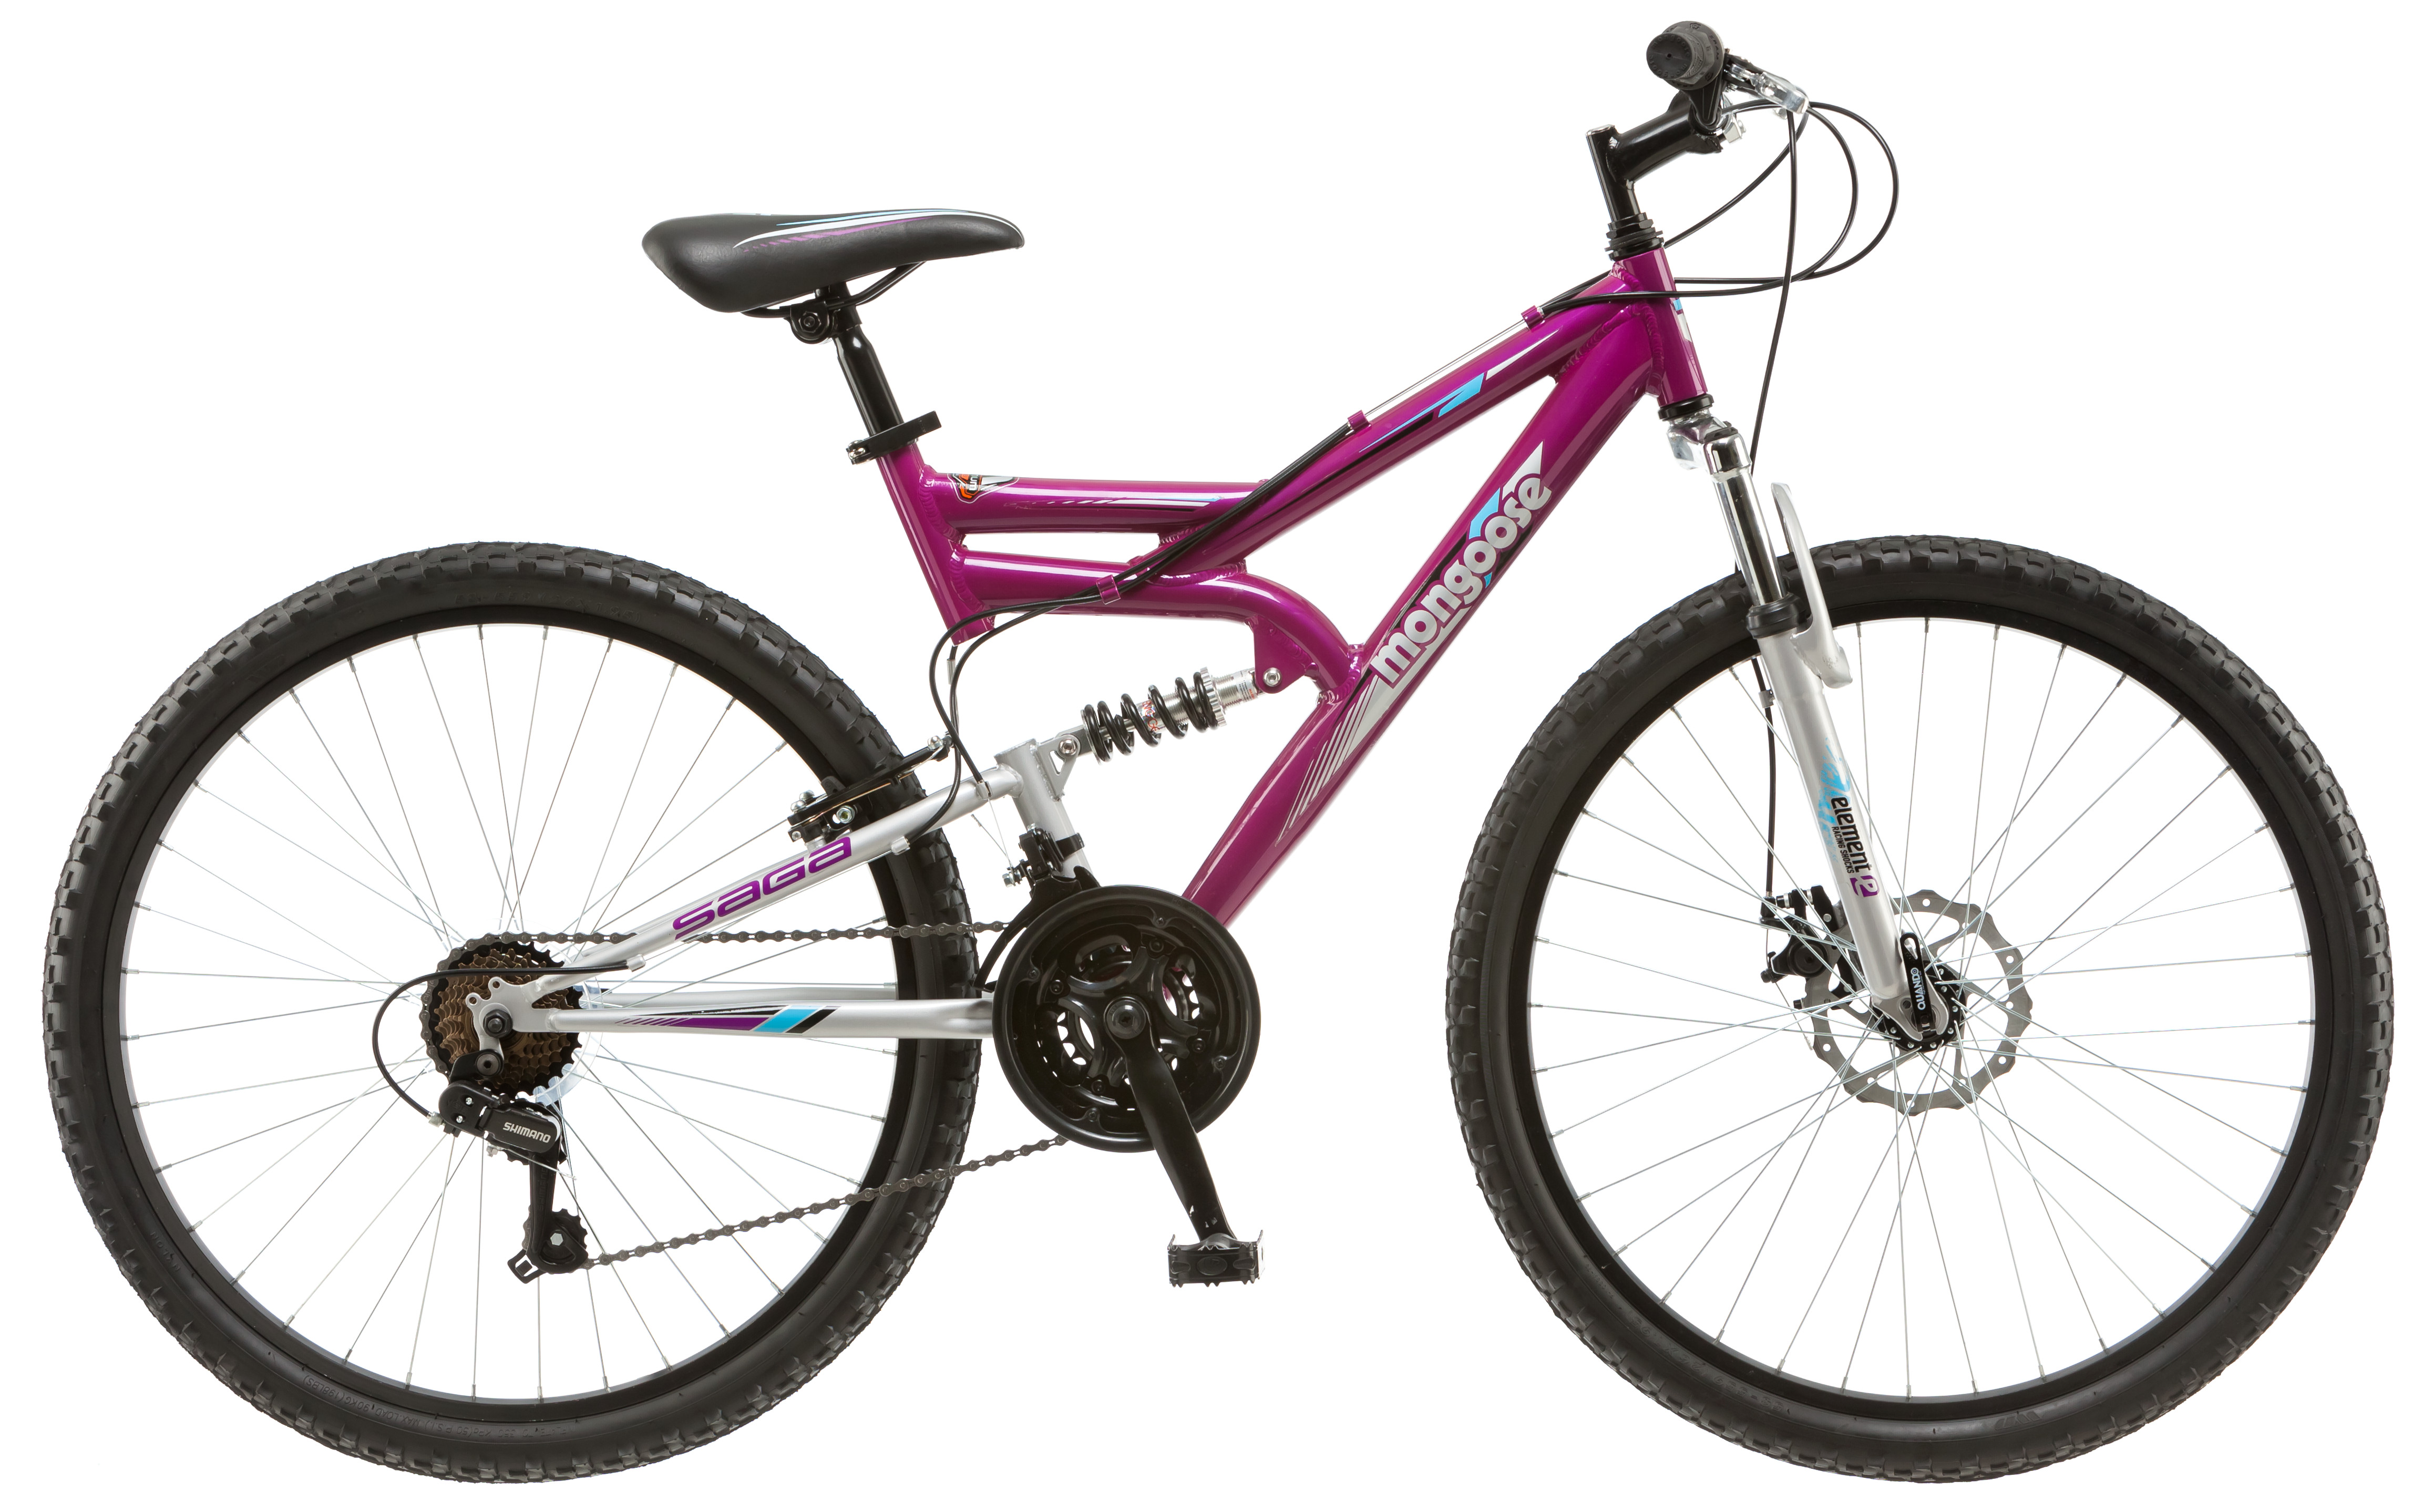 mongoose 26 inch women's bike